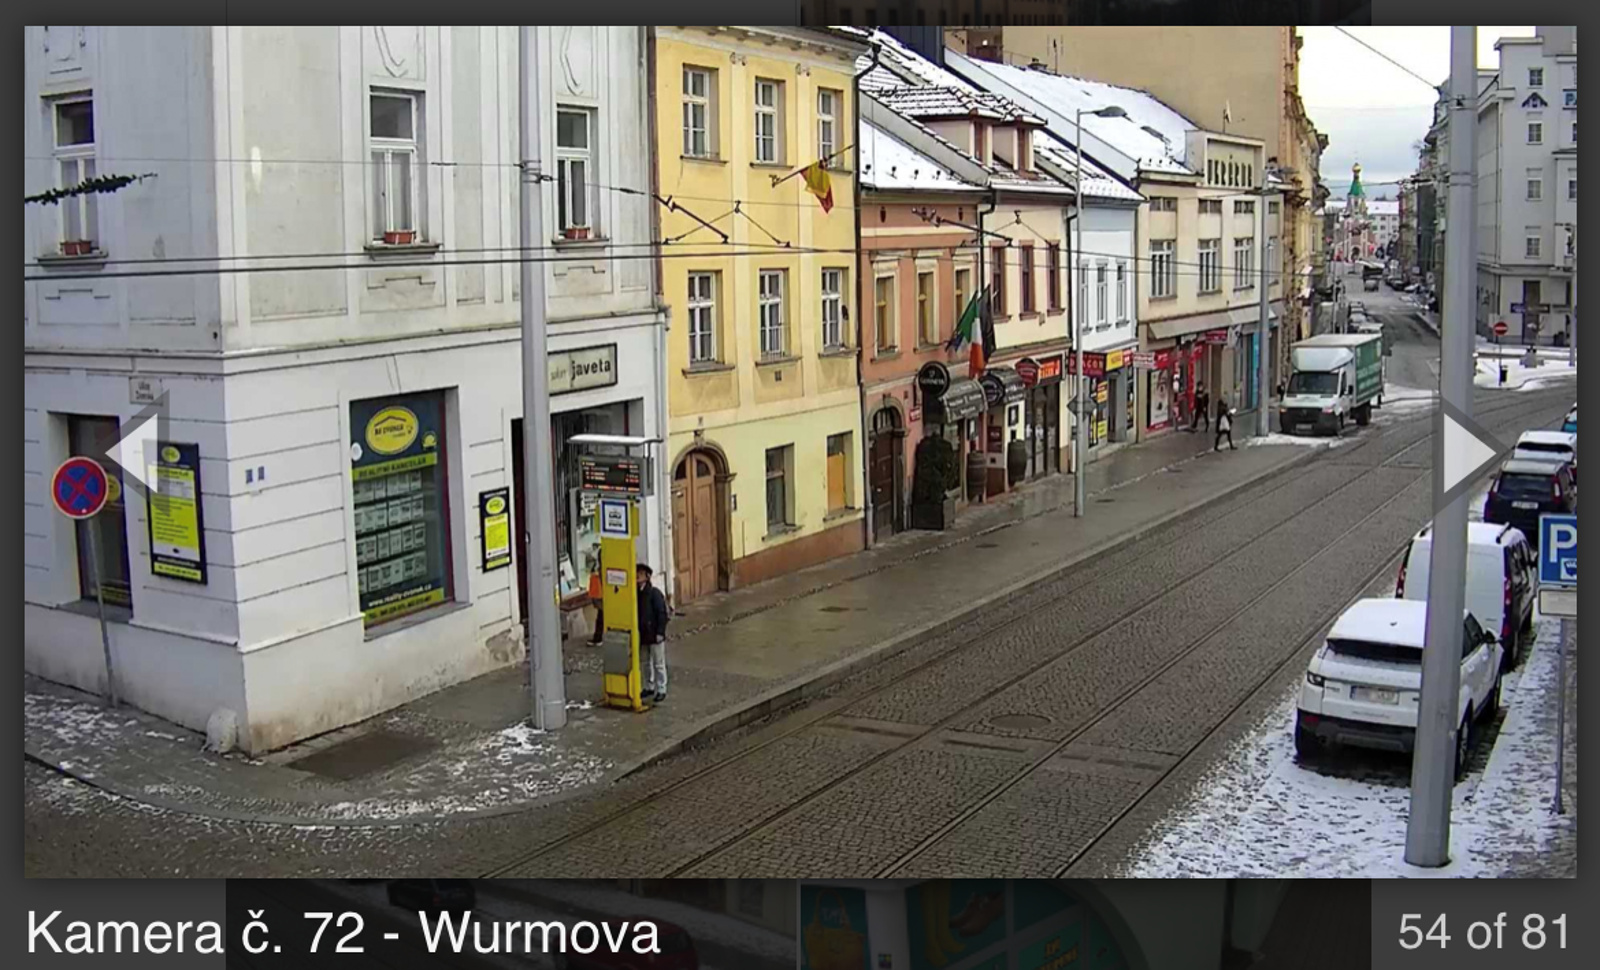 Kde jste teď v Olomouci všude vidět? Podívejte se, kam míří kamery -  Olomoucký deník